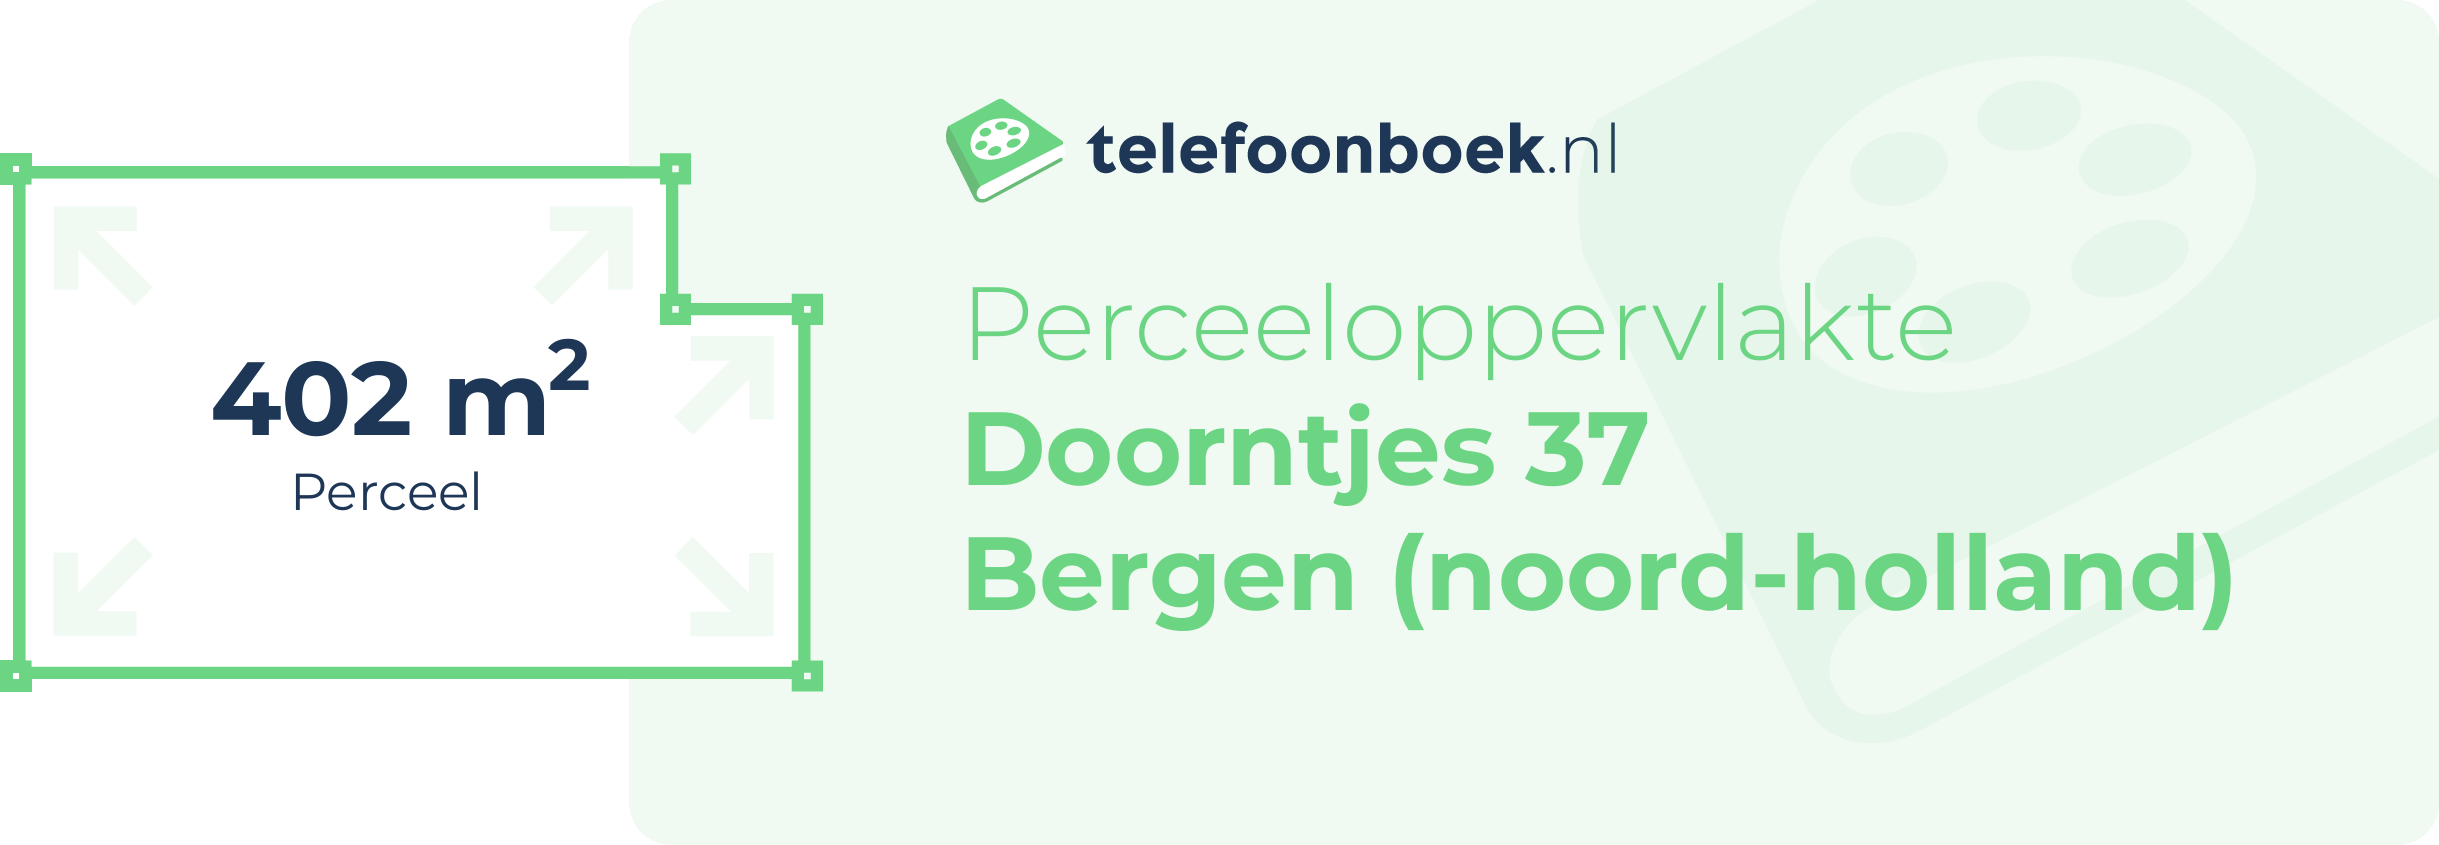 Perceeloppervlakte Doorntjes 37 Bergen (Noord-Holland)